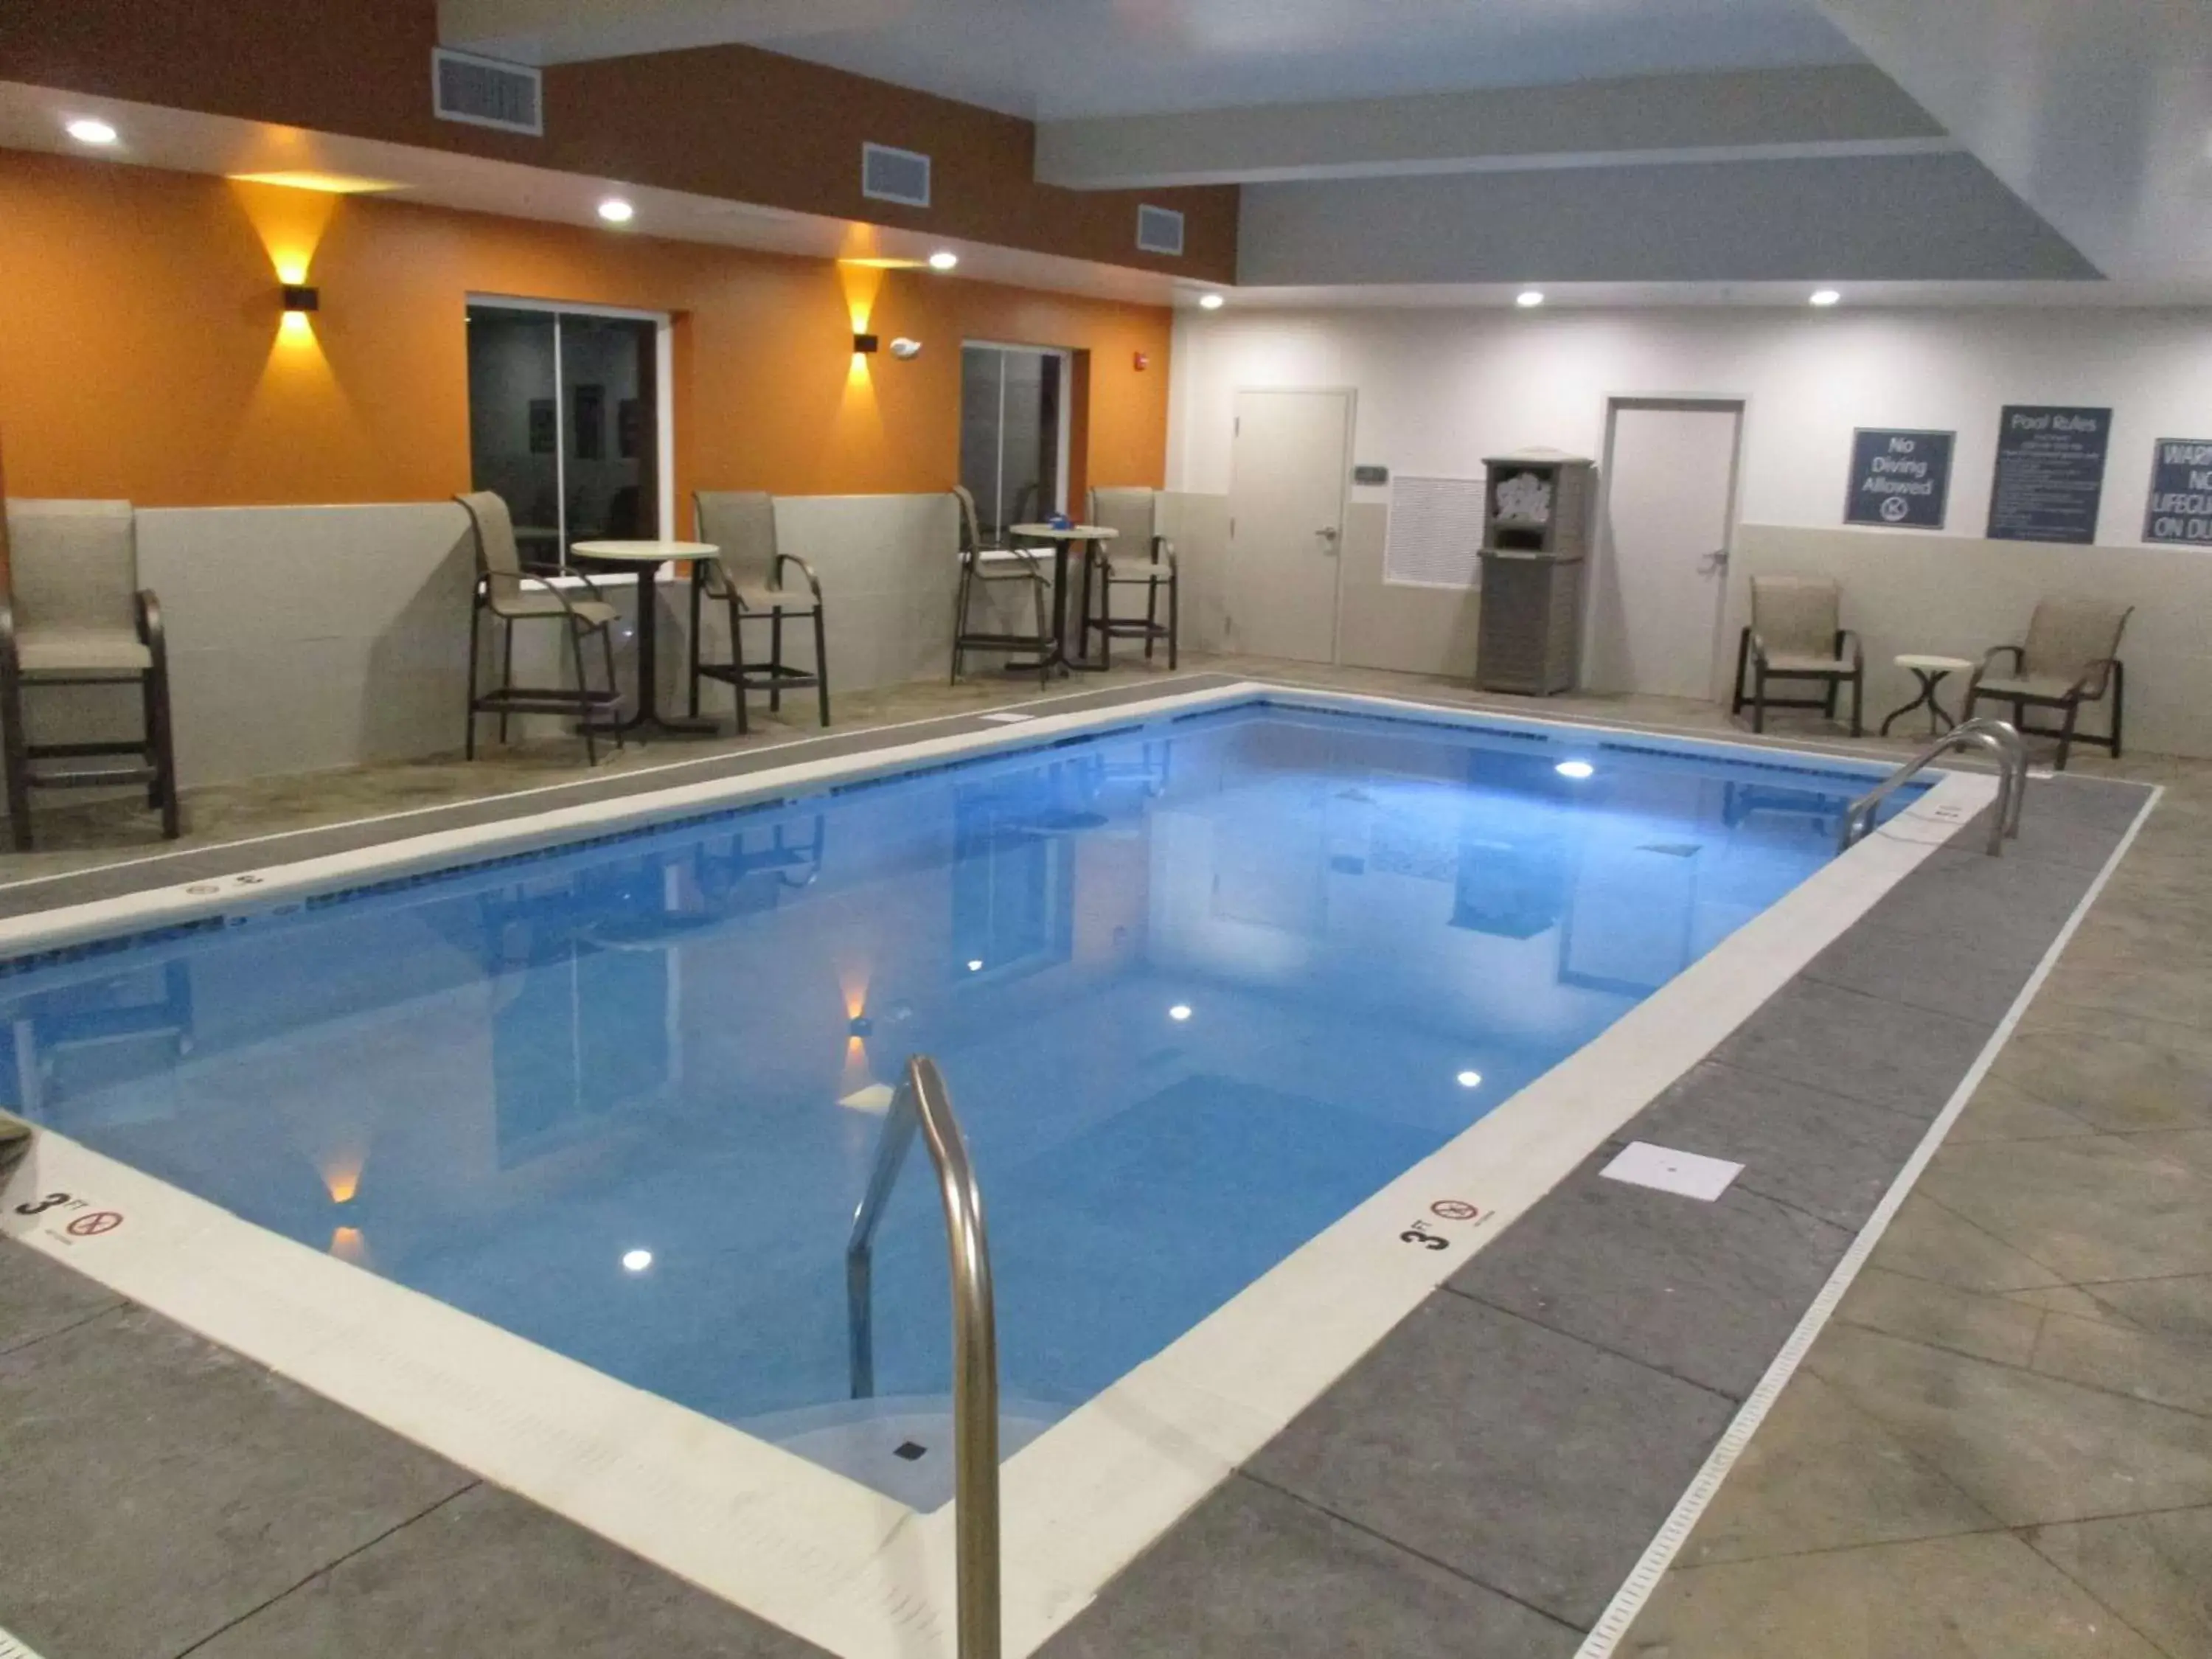 On site, Swimming Pool in Best Western Plus Owensboro